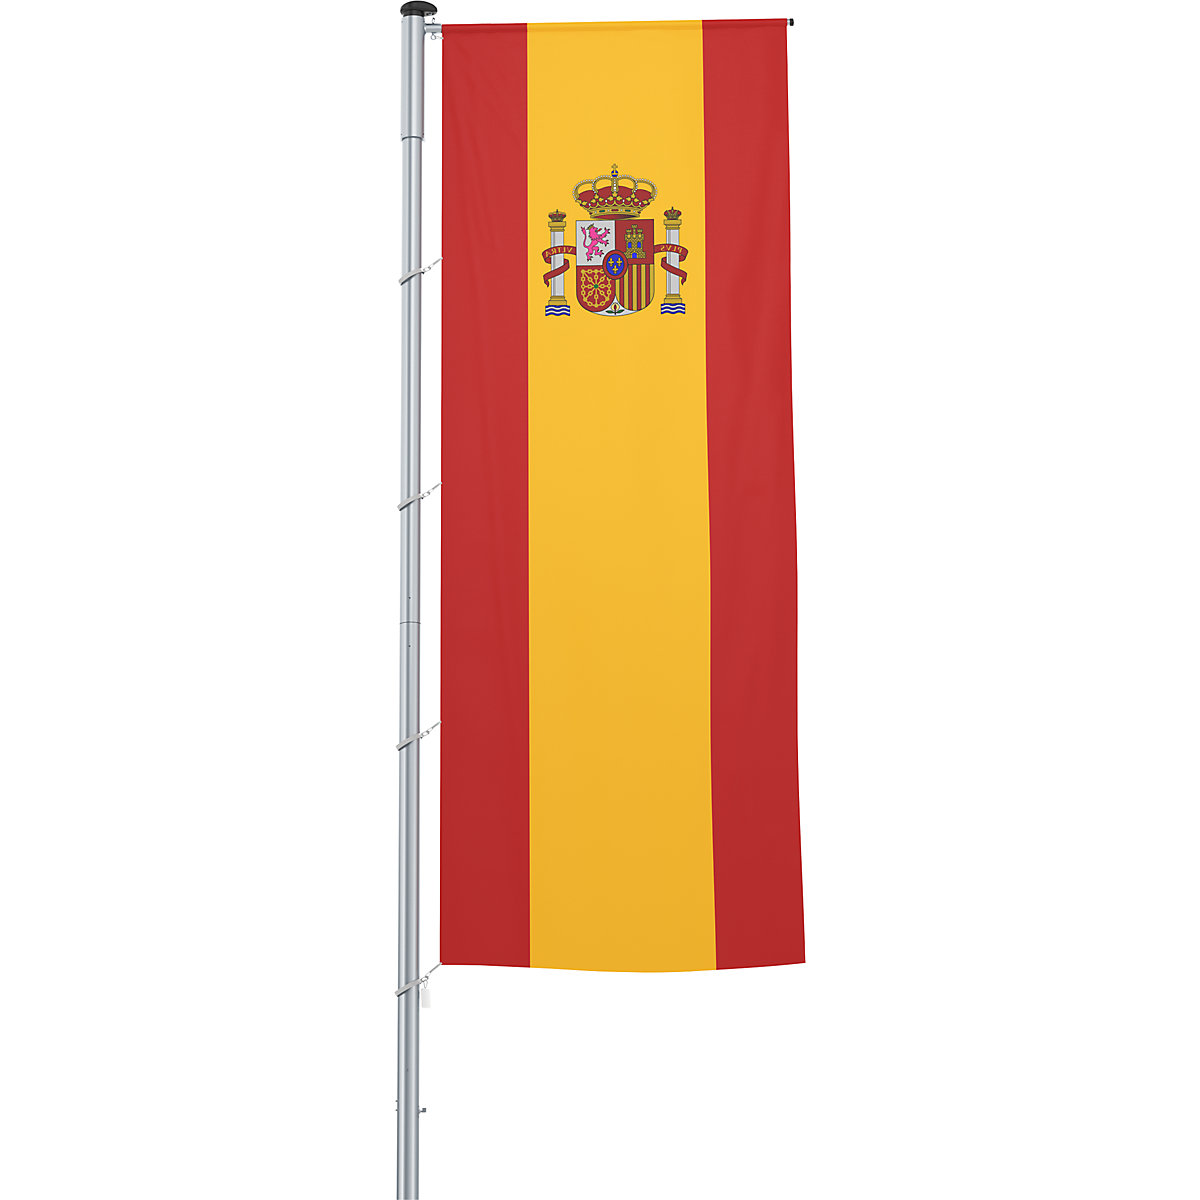 Vlajka na pozdĺžne upevnenie na stožiar/národná vlajka - Mannus